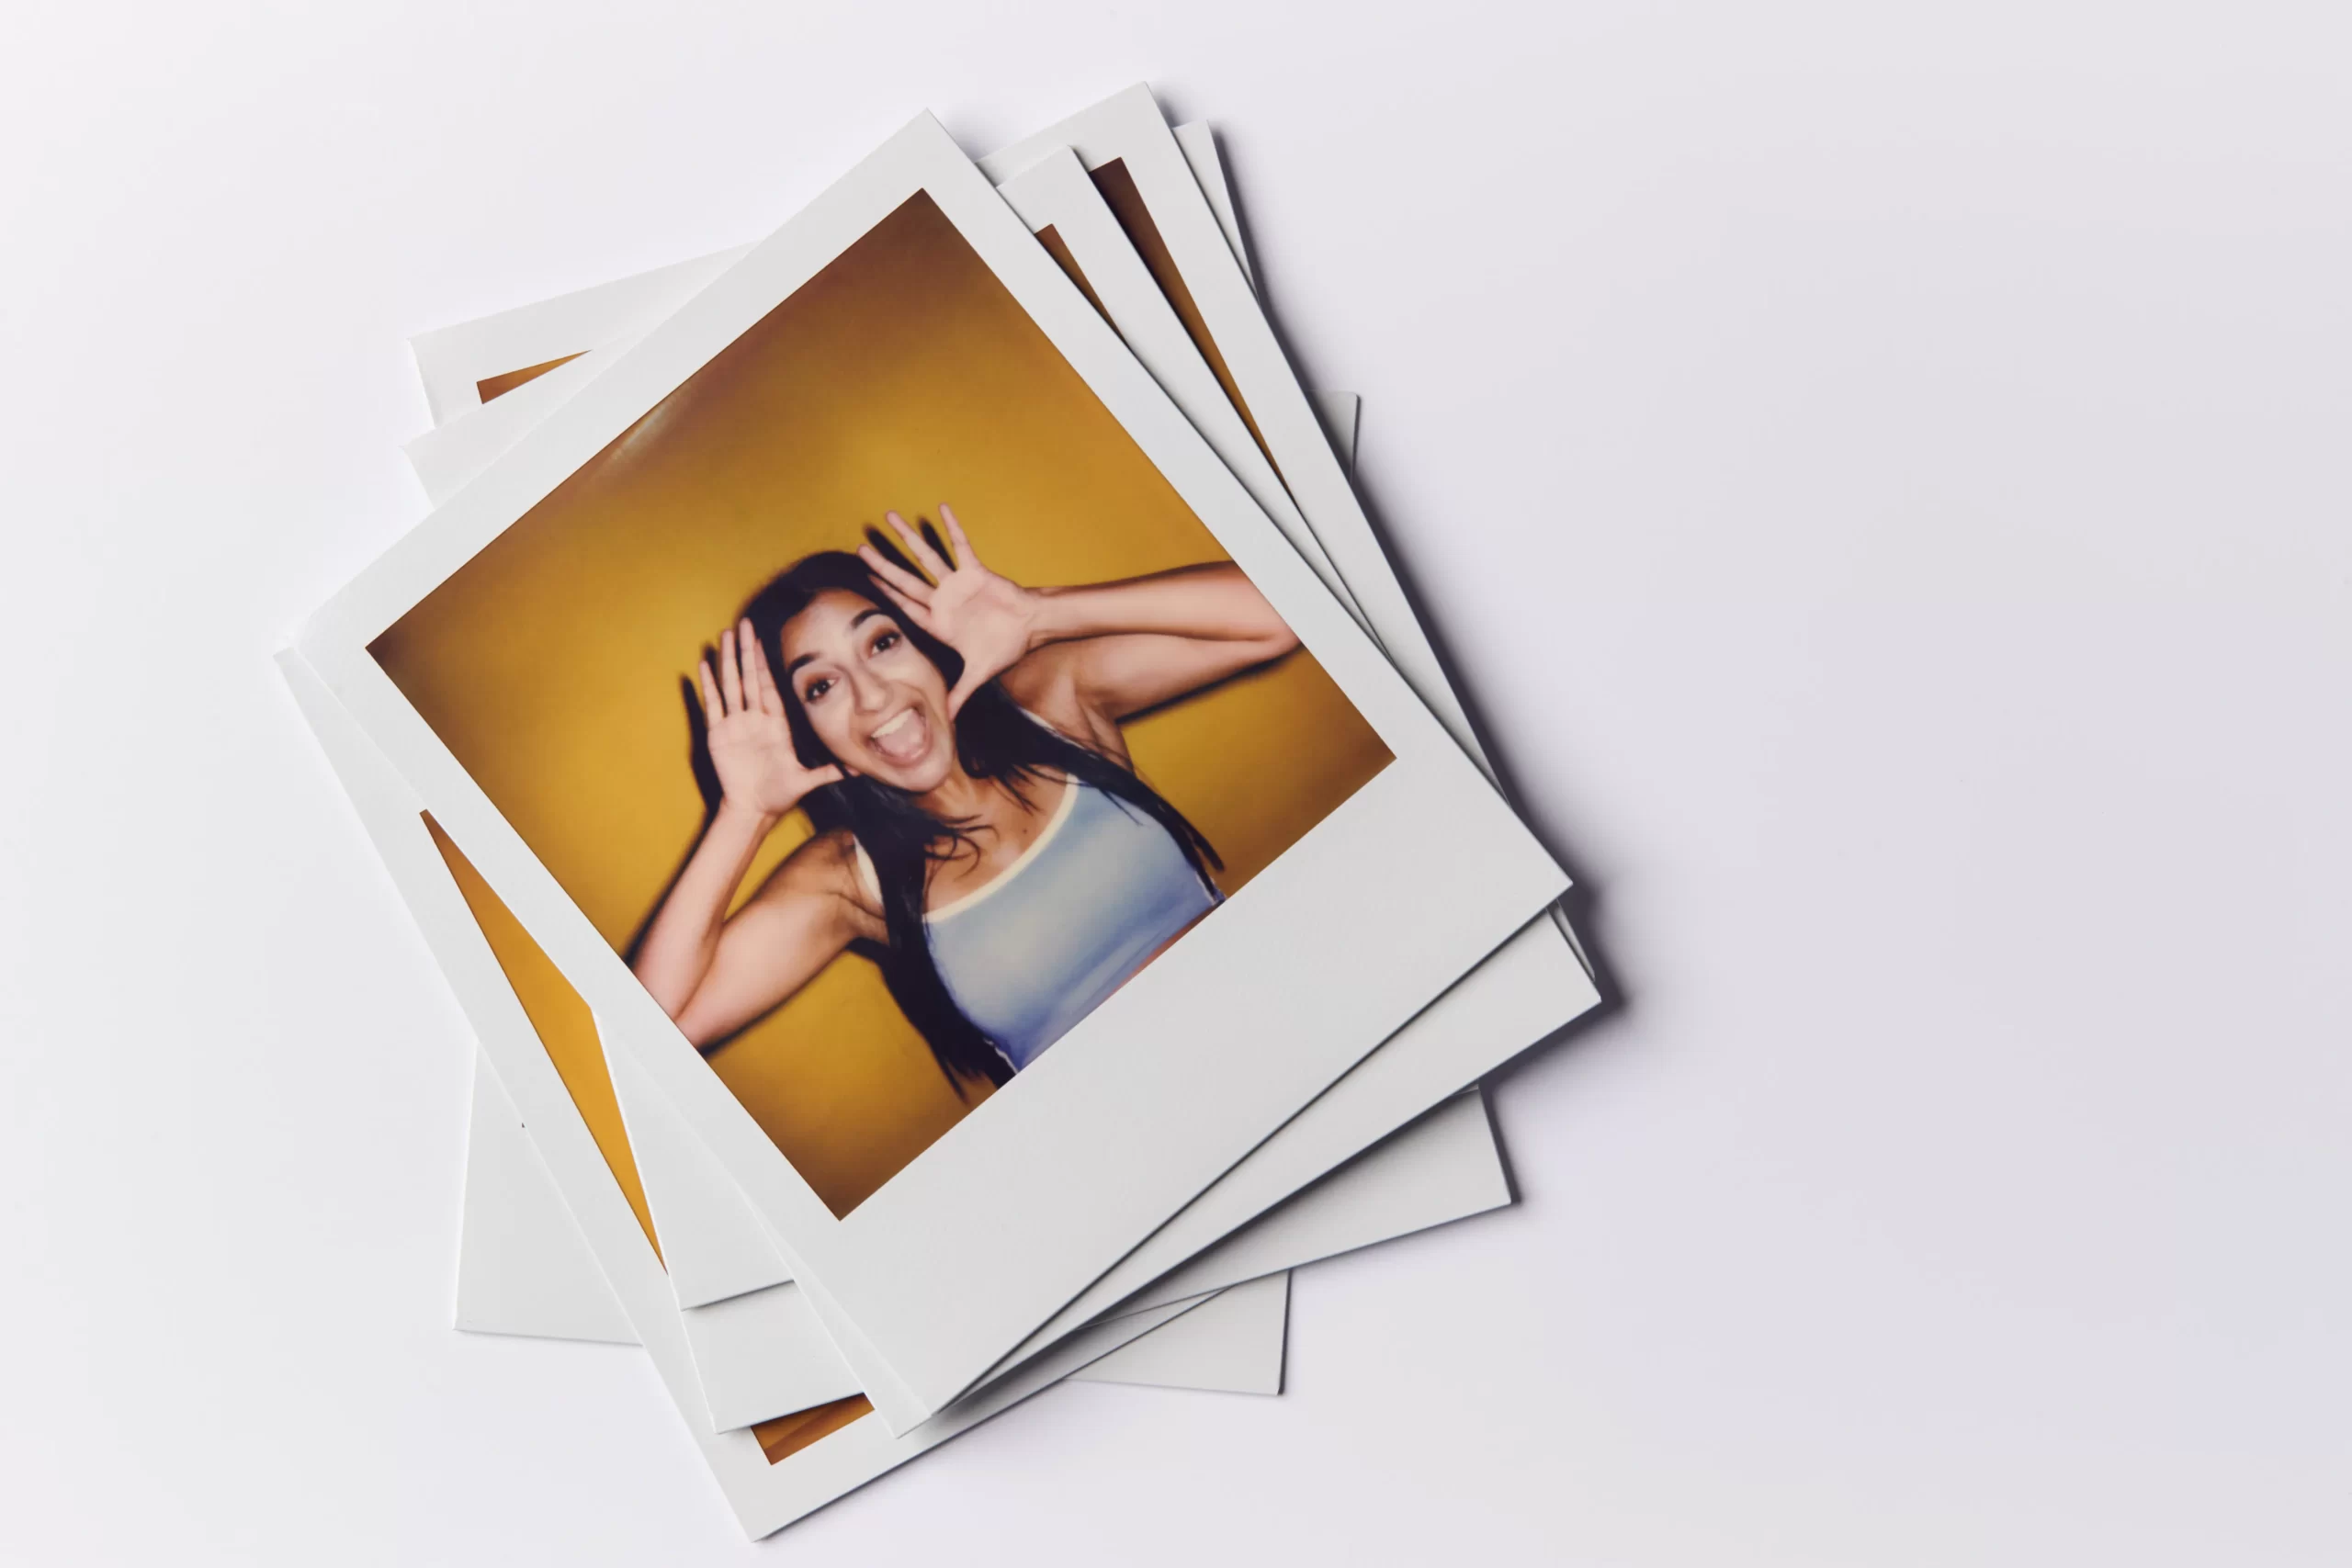 De beste tips voor betere polaroid foto's